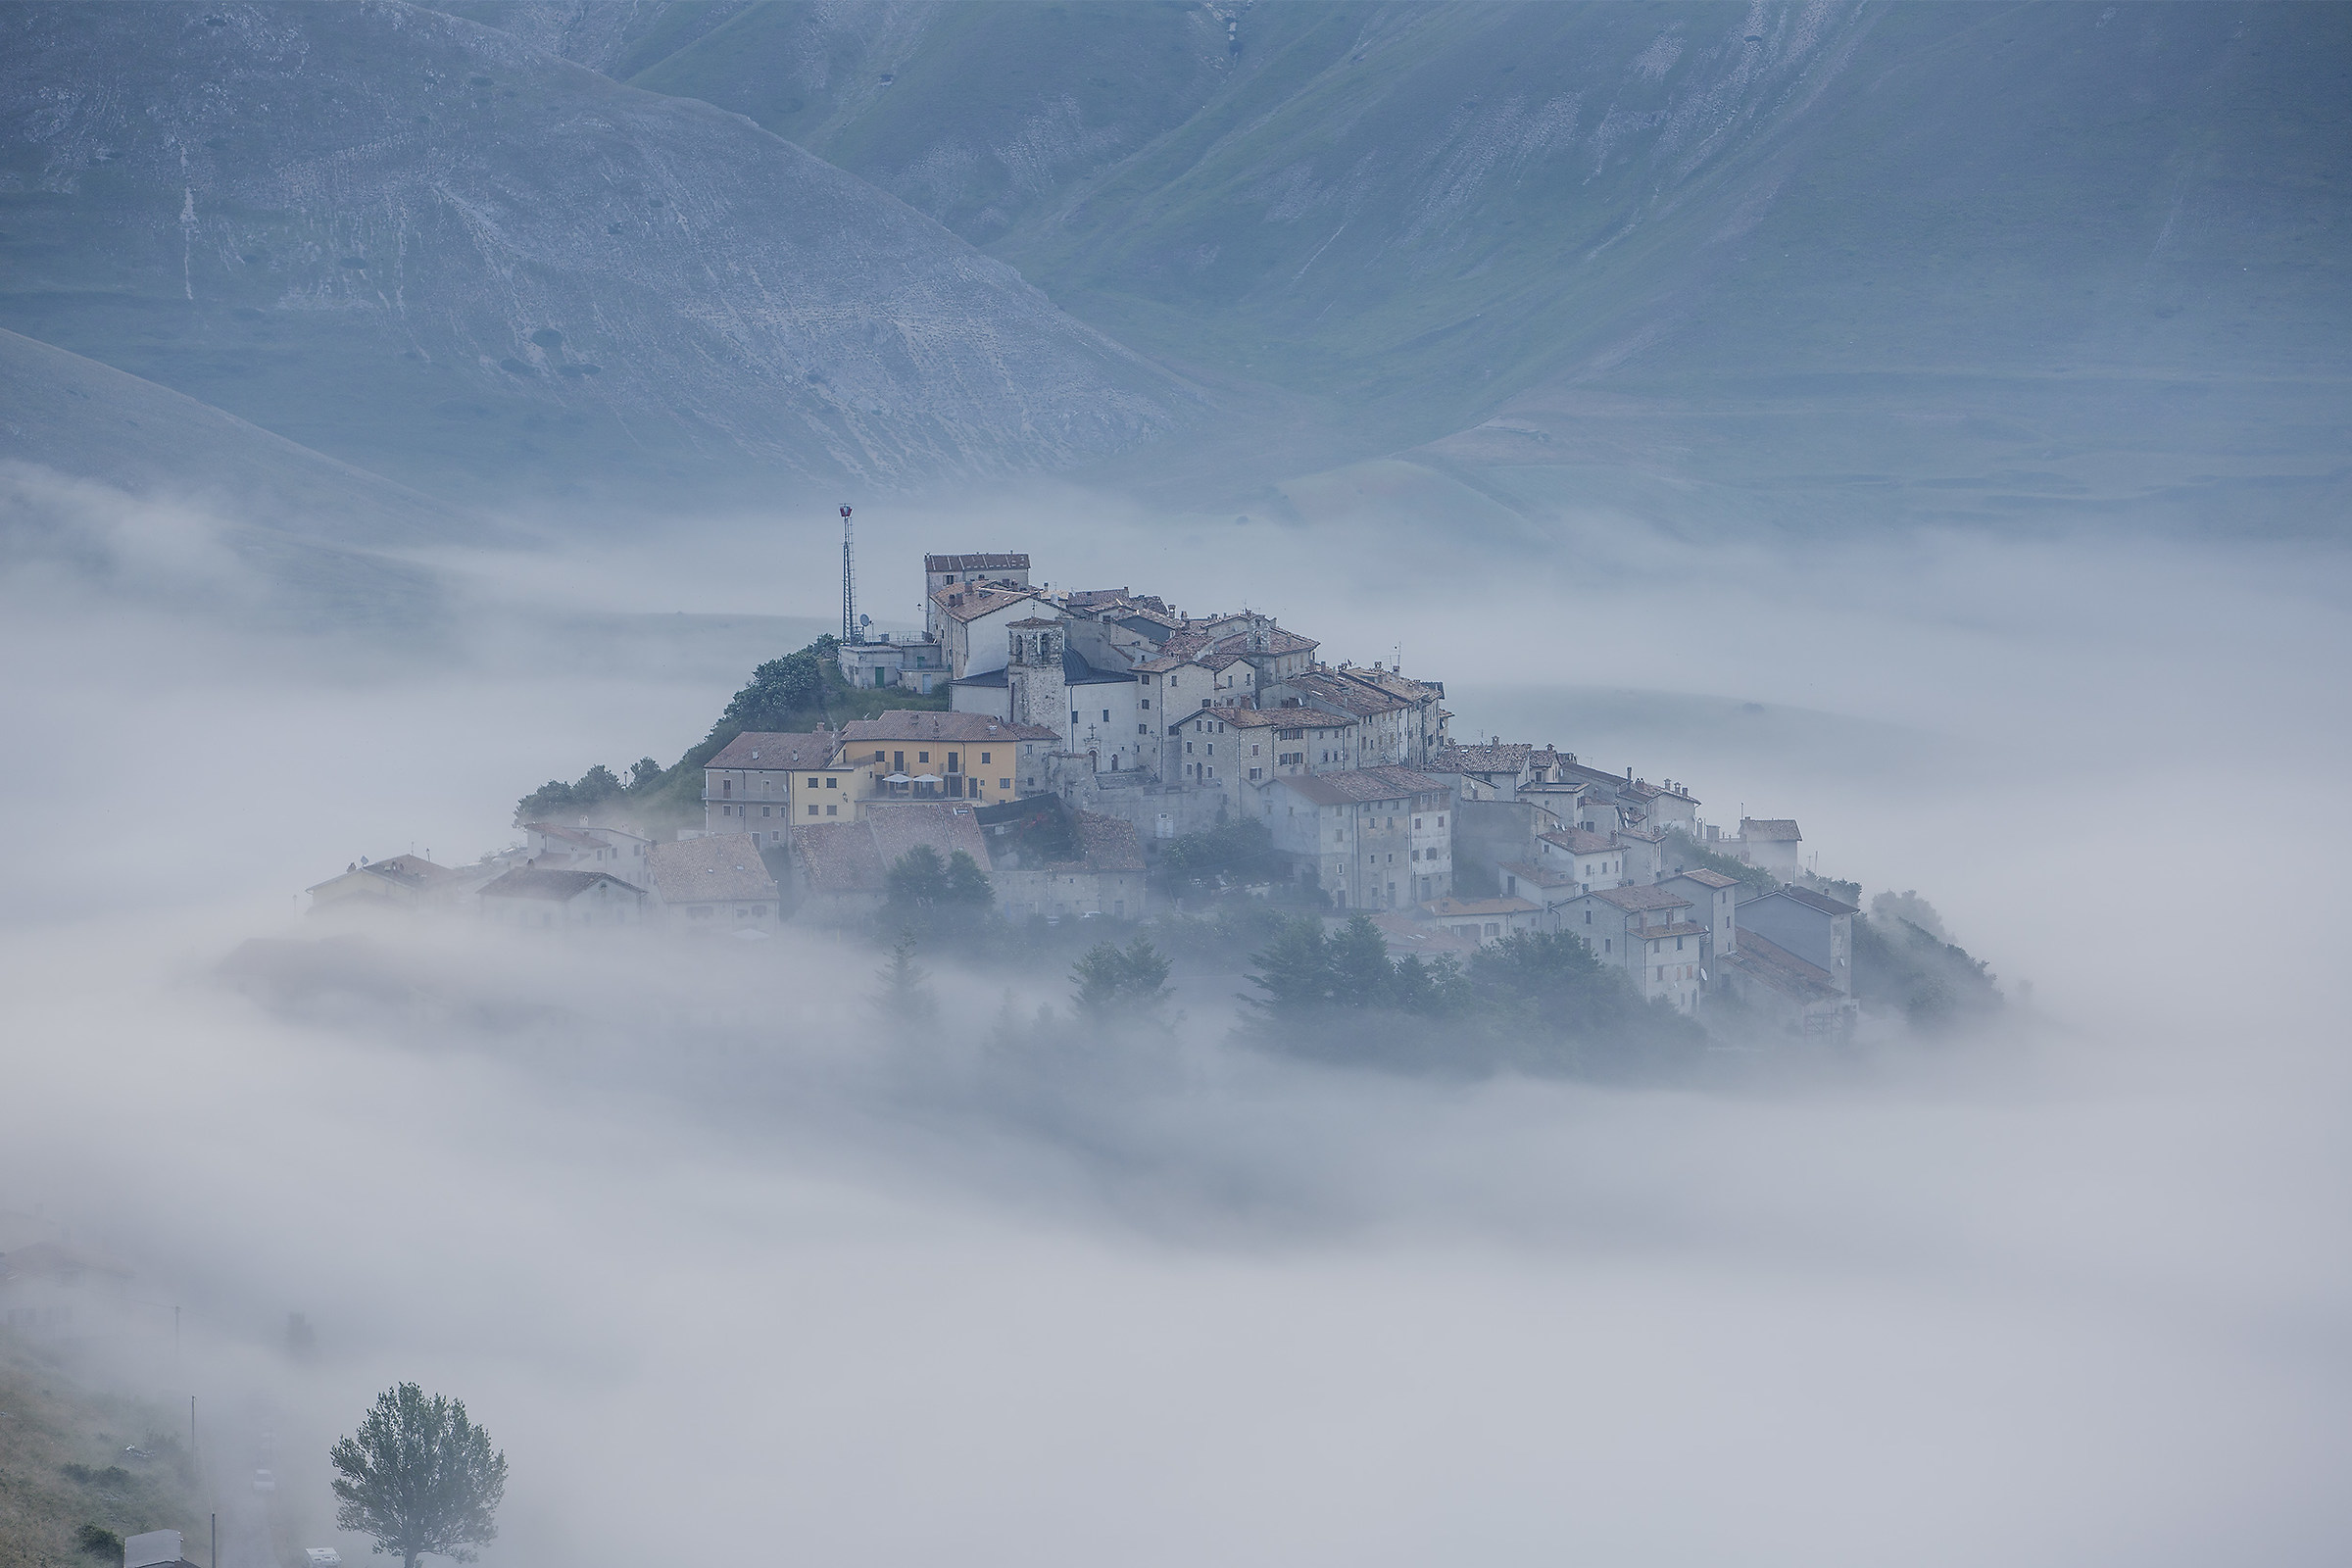 Castelluccio through the fog...